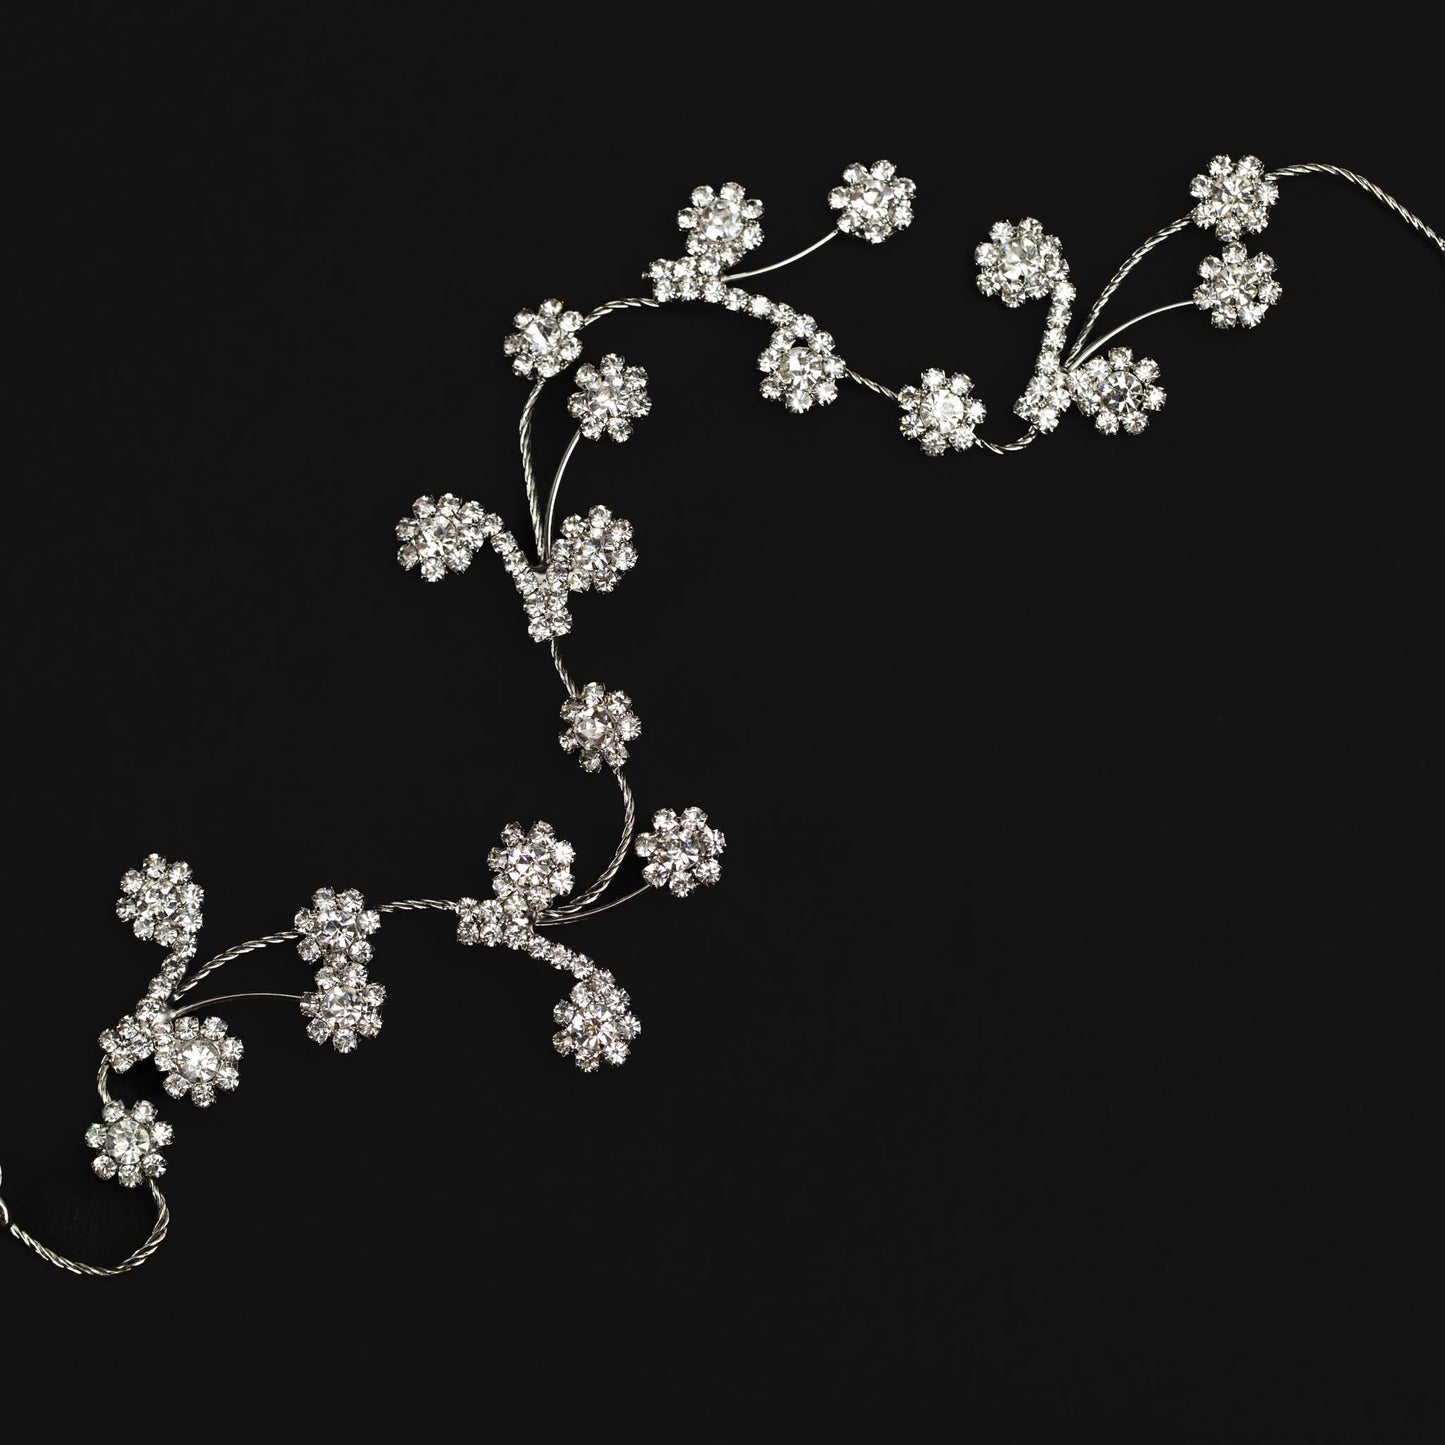 Diademă elegantă maleabilă cu strasuri, pietre, flori - Argintiu Timeless